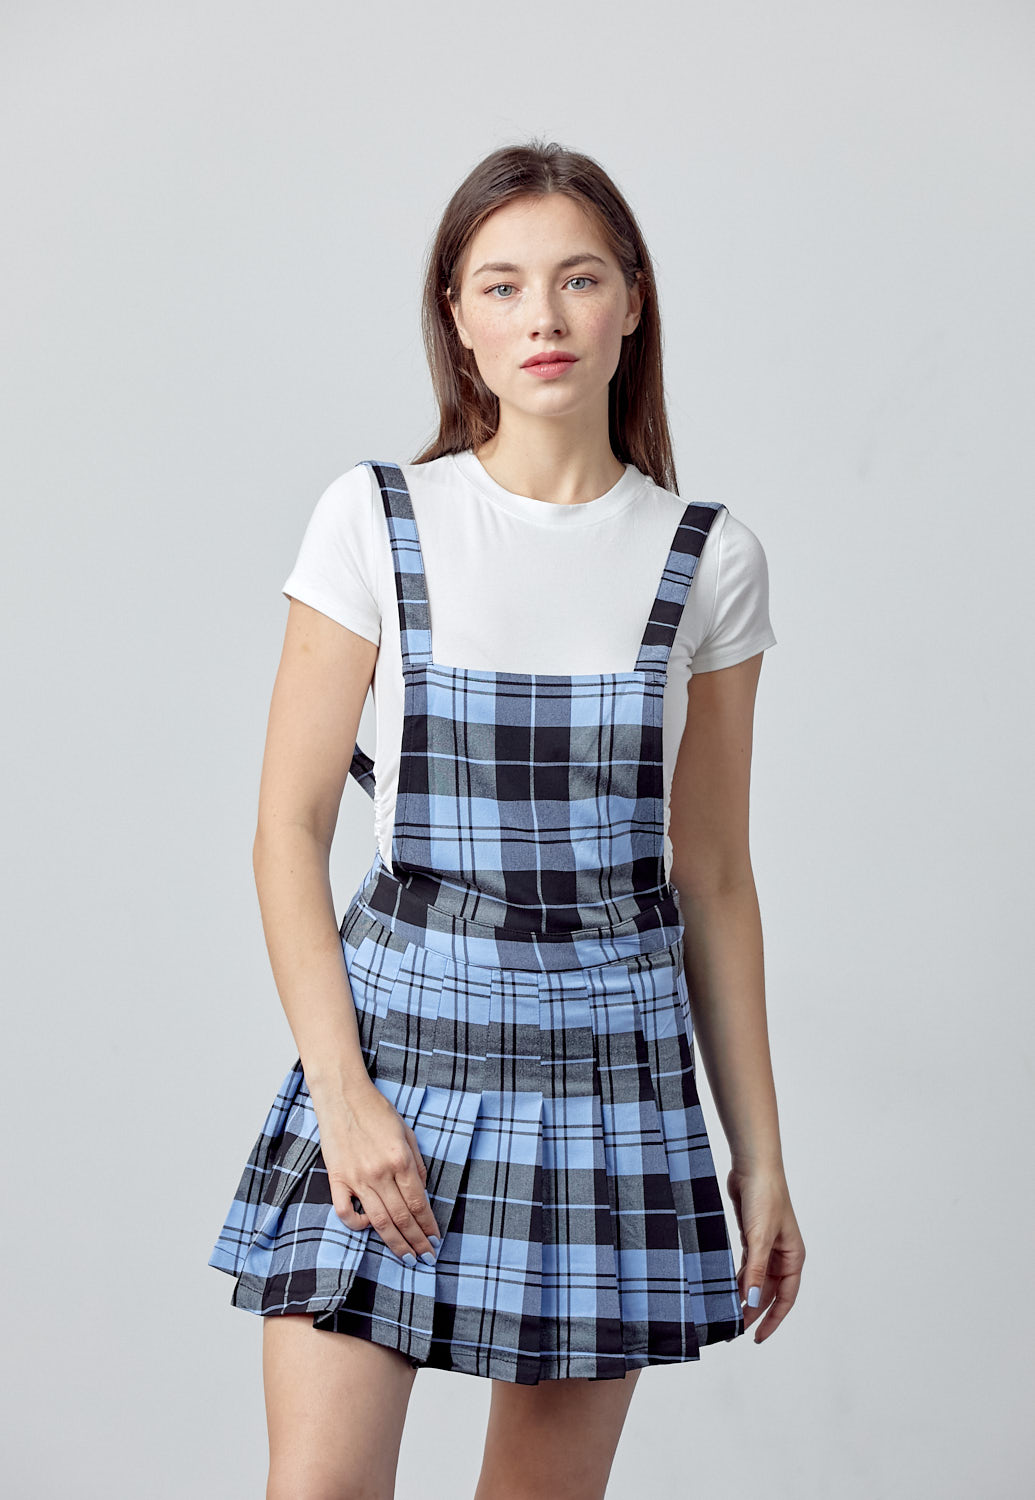 Plaid Overall Pleated Skirt